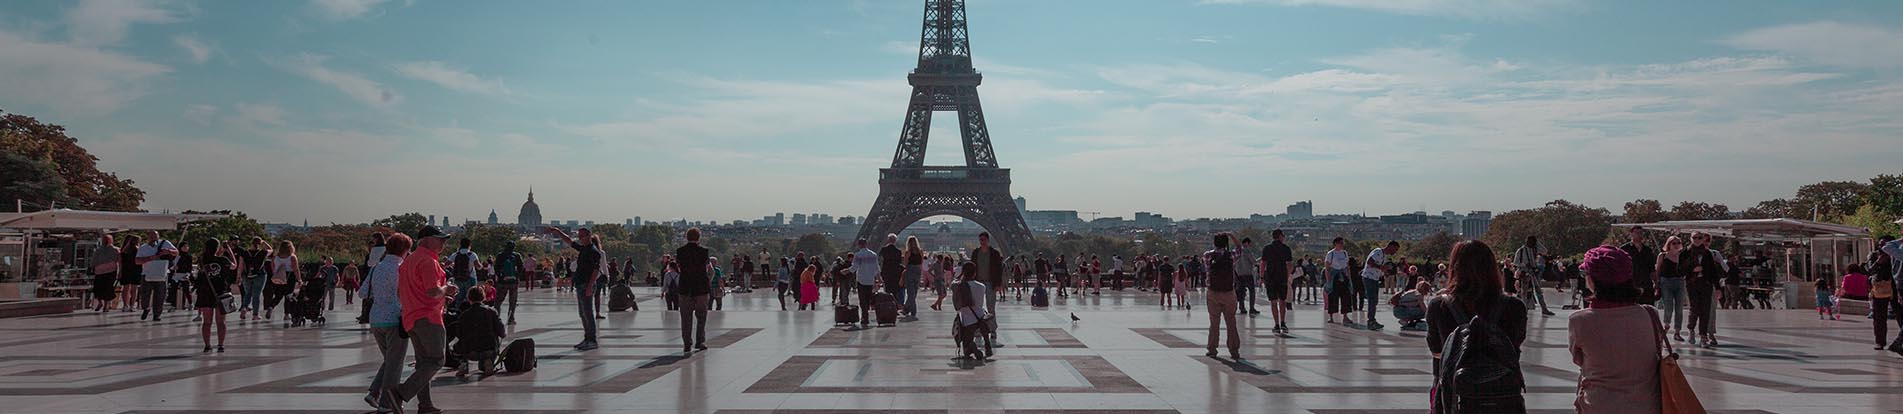 7 Major Spots to Visit During Paris Trip | Paris Travel Guide